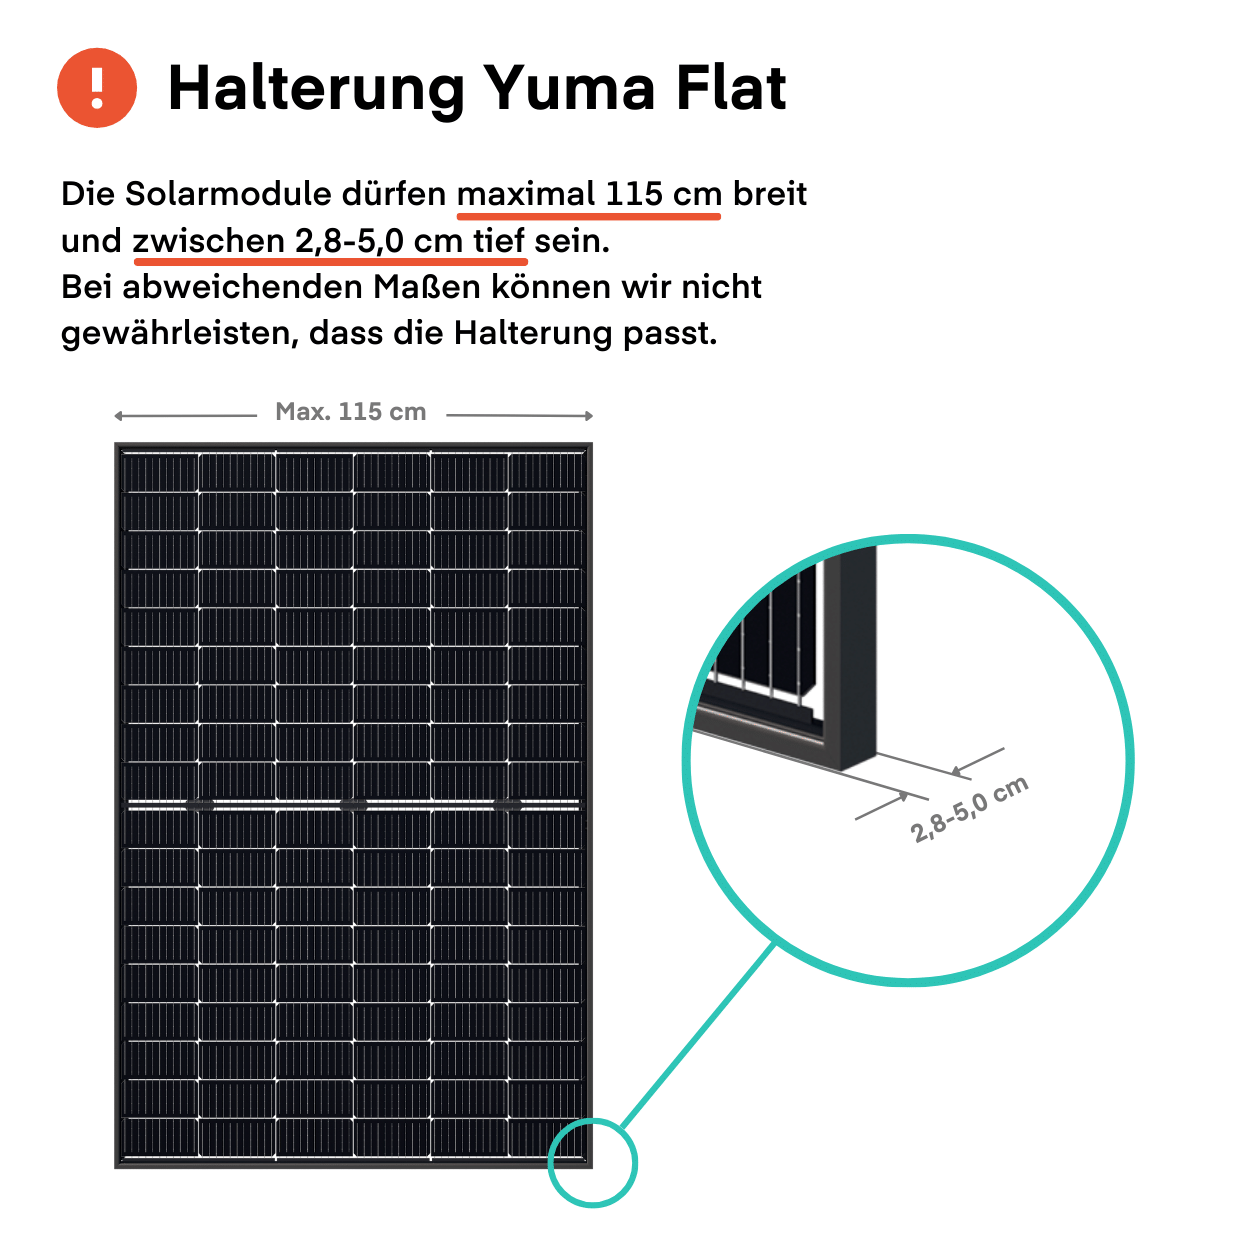 Halterung Yuma Flat (Flachdach oder Bodenmontage)